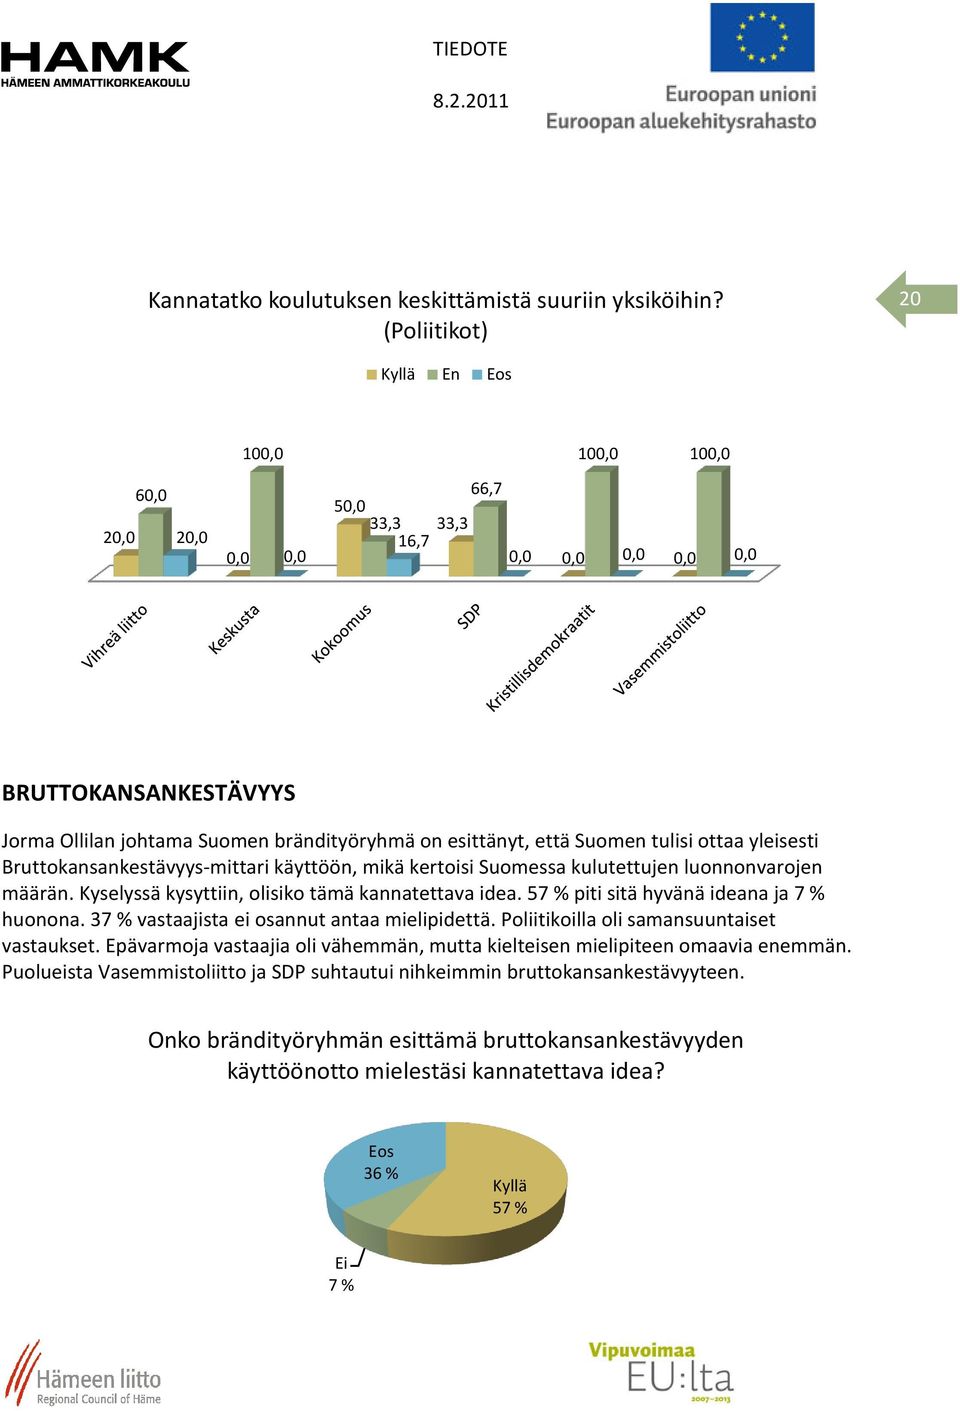 Bruttokansankestävyys-mittari käyttöön, mikä kertoisi Suomessa kulutettujen luonnonvarojen määrän. Kyselyssä kysyttiin, olisiko tämä kannatettava idea. 57 % piti sitä hyvänä ideana ja 7 % huonona.